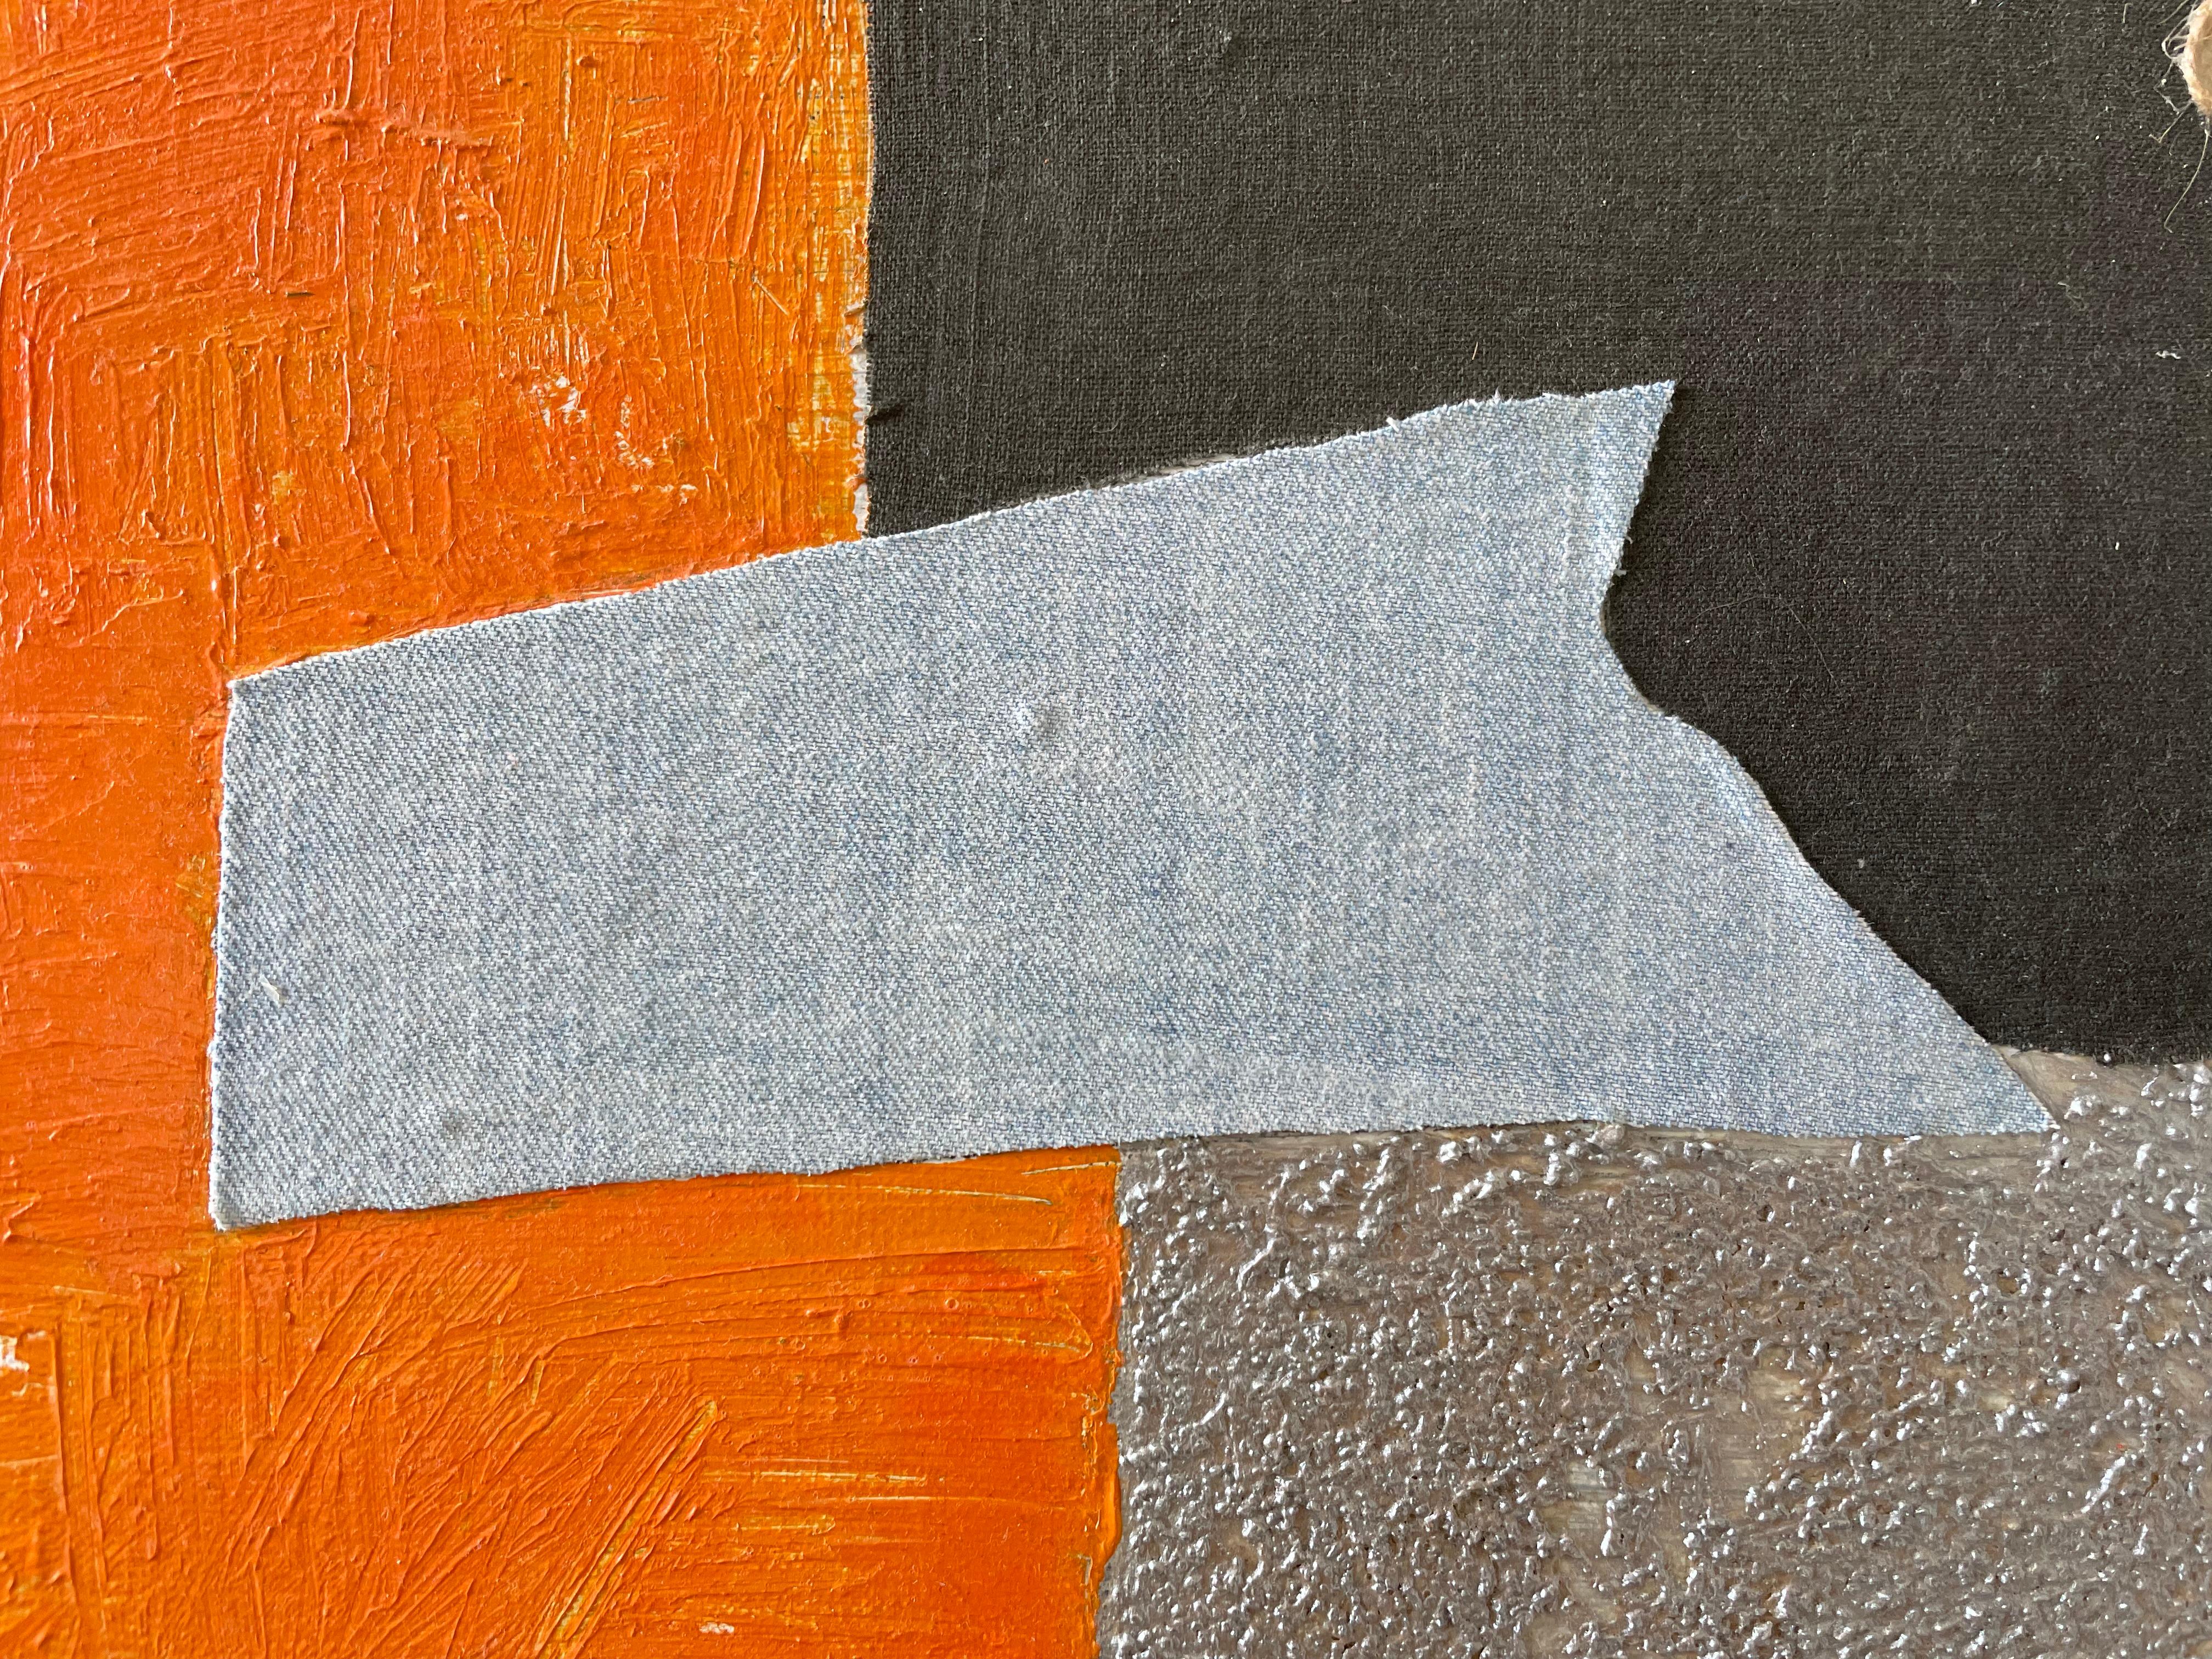 Quadratische Komposition im Genre des Konzeptualismus. Das Gemälde in Mischtechnik hat ein kontrastreiches und warmes Farbschema - Orange, Silber, Grau und Dunkelgrün. Acrylfarbe, Strukturpaste mit Kaffee und Sand, Leinen, Baumwolle und Jutefasern